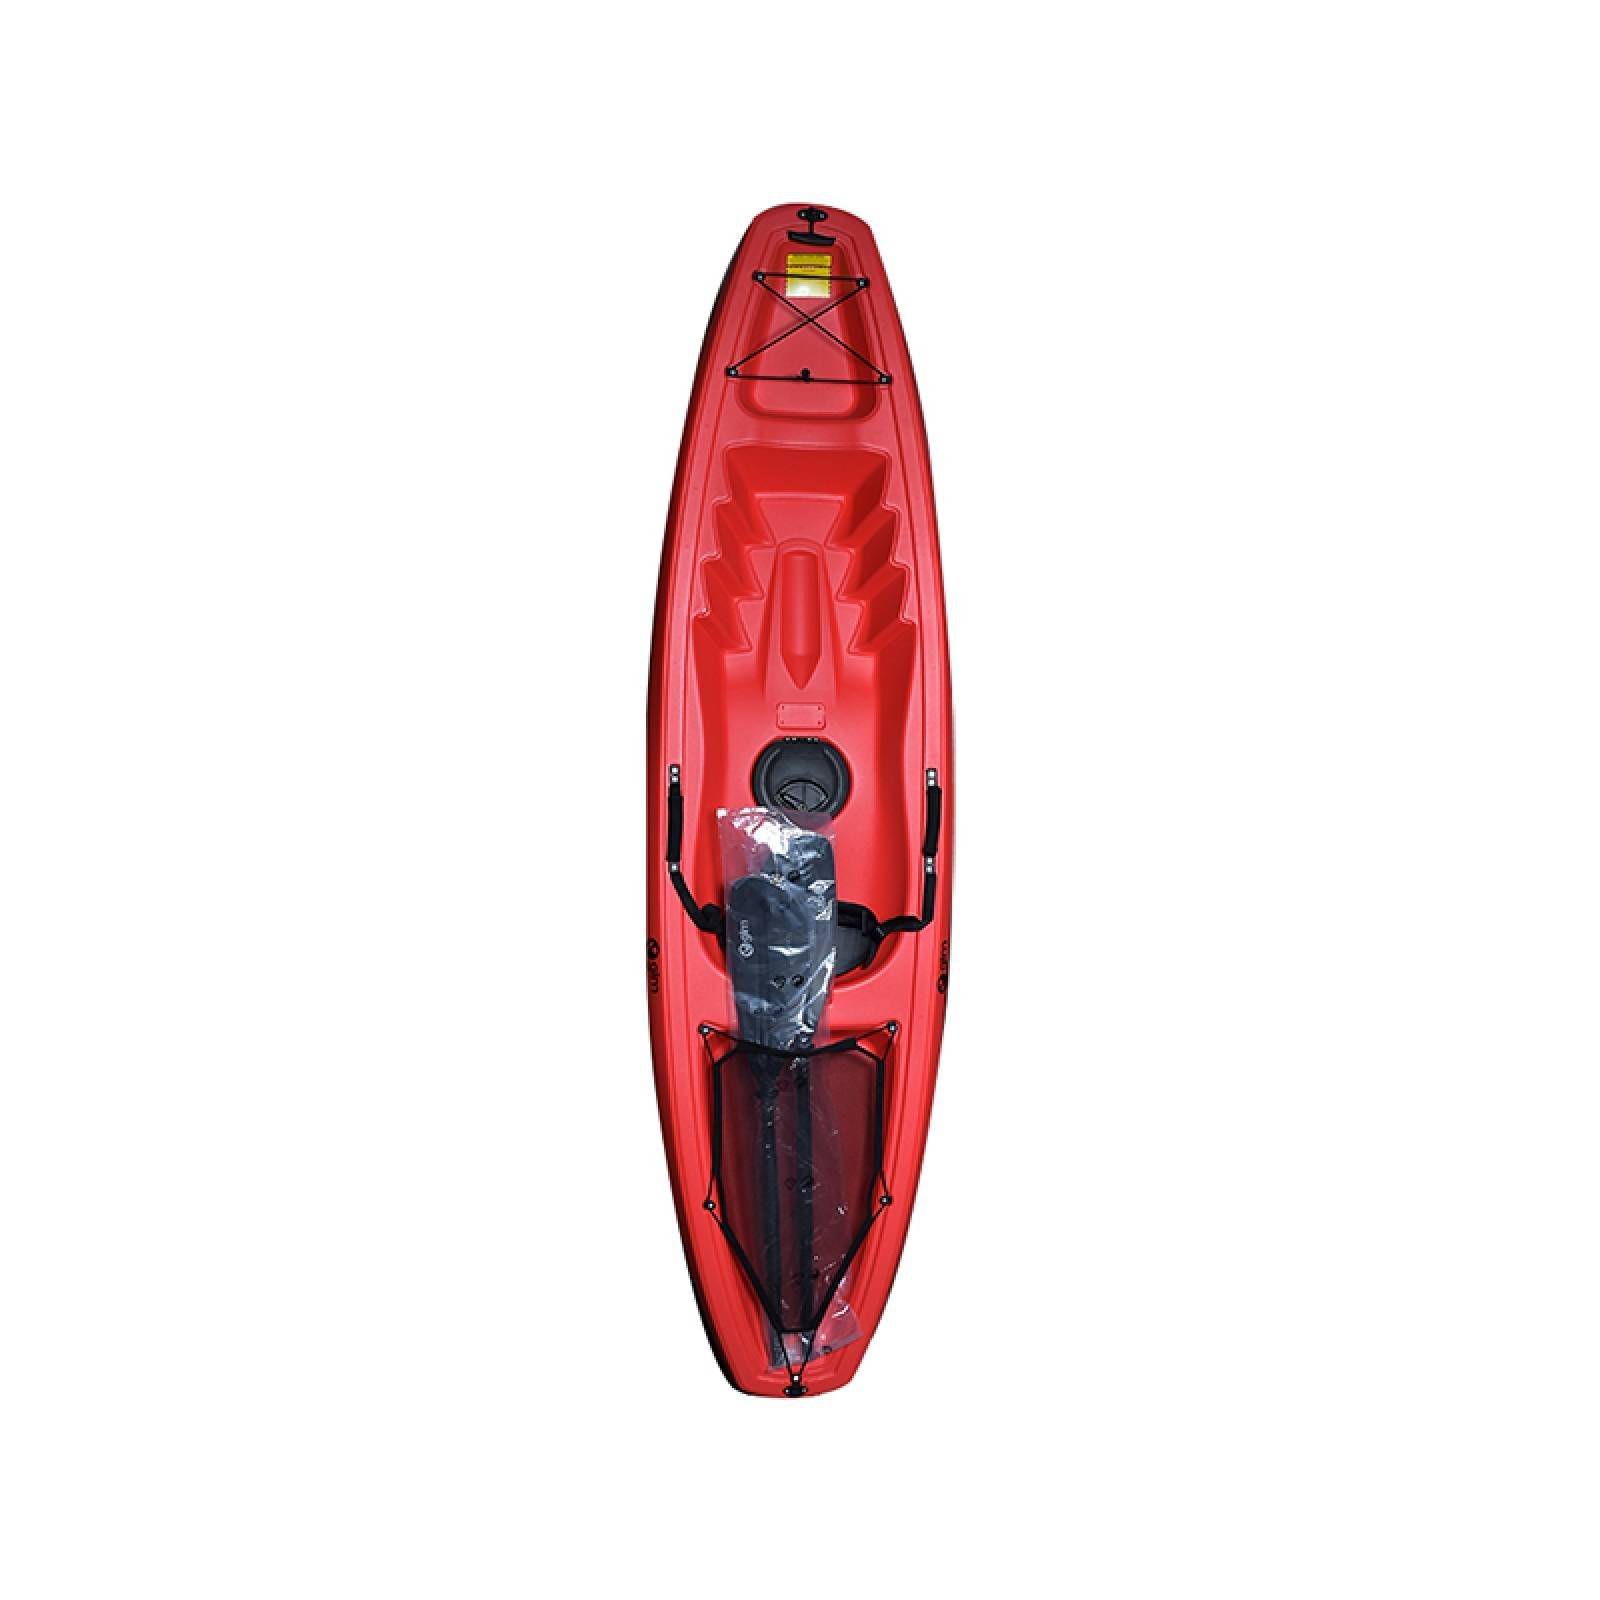 Kayak Polietileno 1 Persona 1 Remo 226cm 125Kg Rojo Gimbel